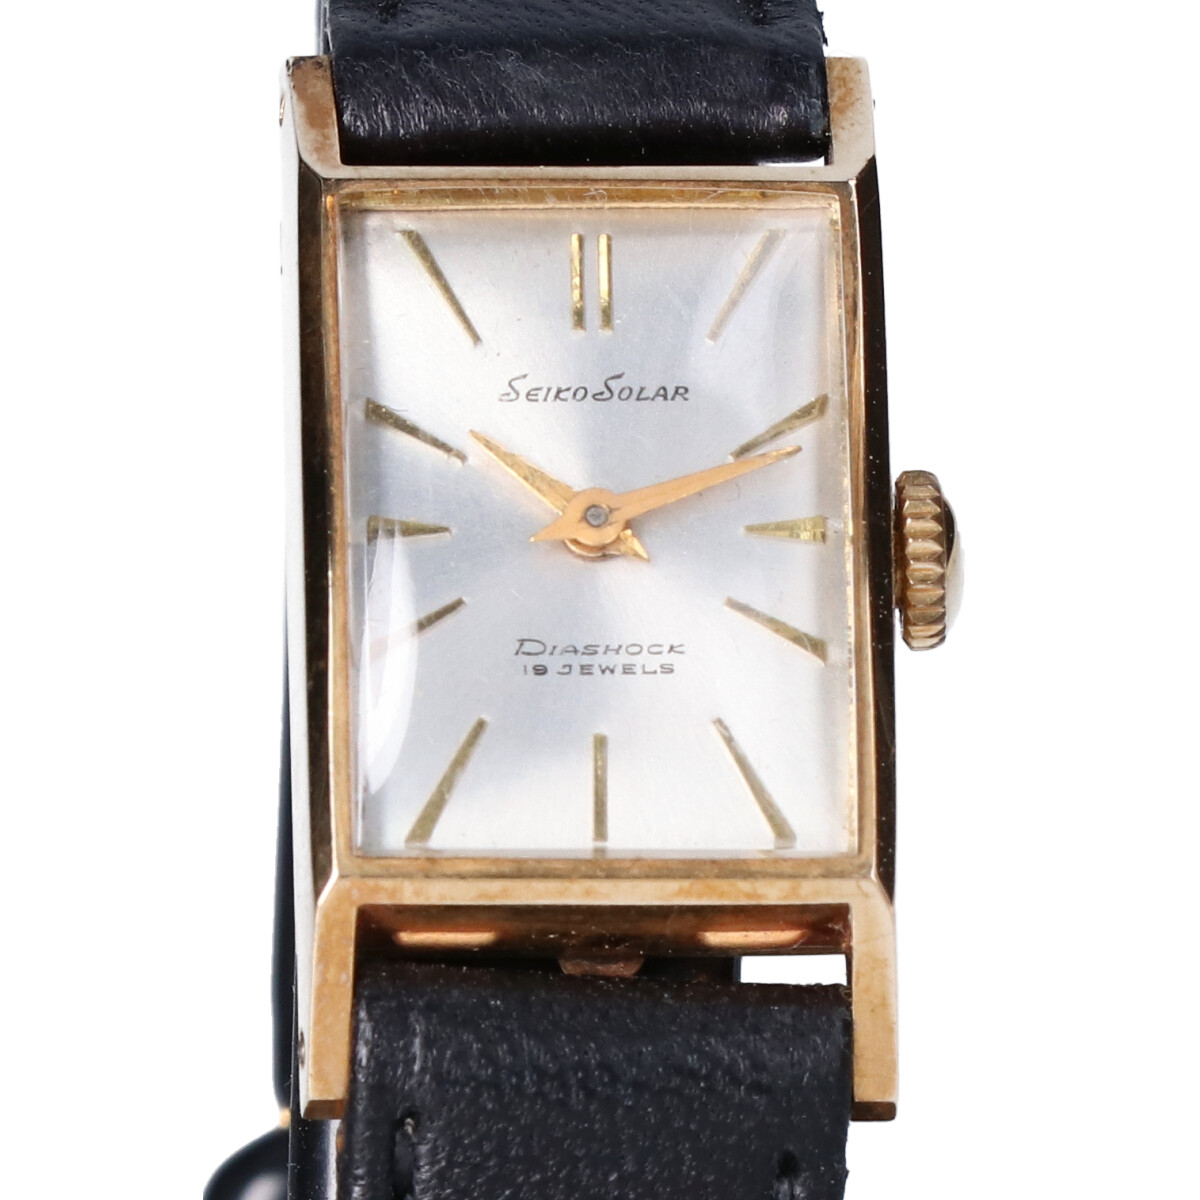 セイコーのSEIKO SOLAR DIASHOCK 18石 K18 589 手巻き ヴィンテージ腕時計の買取実績です。